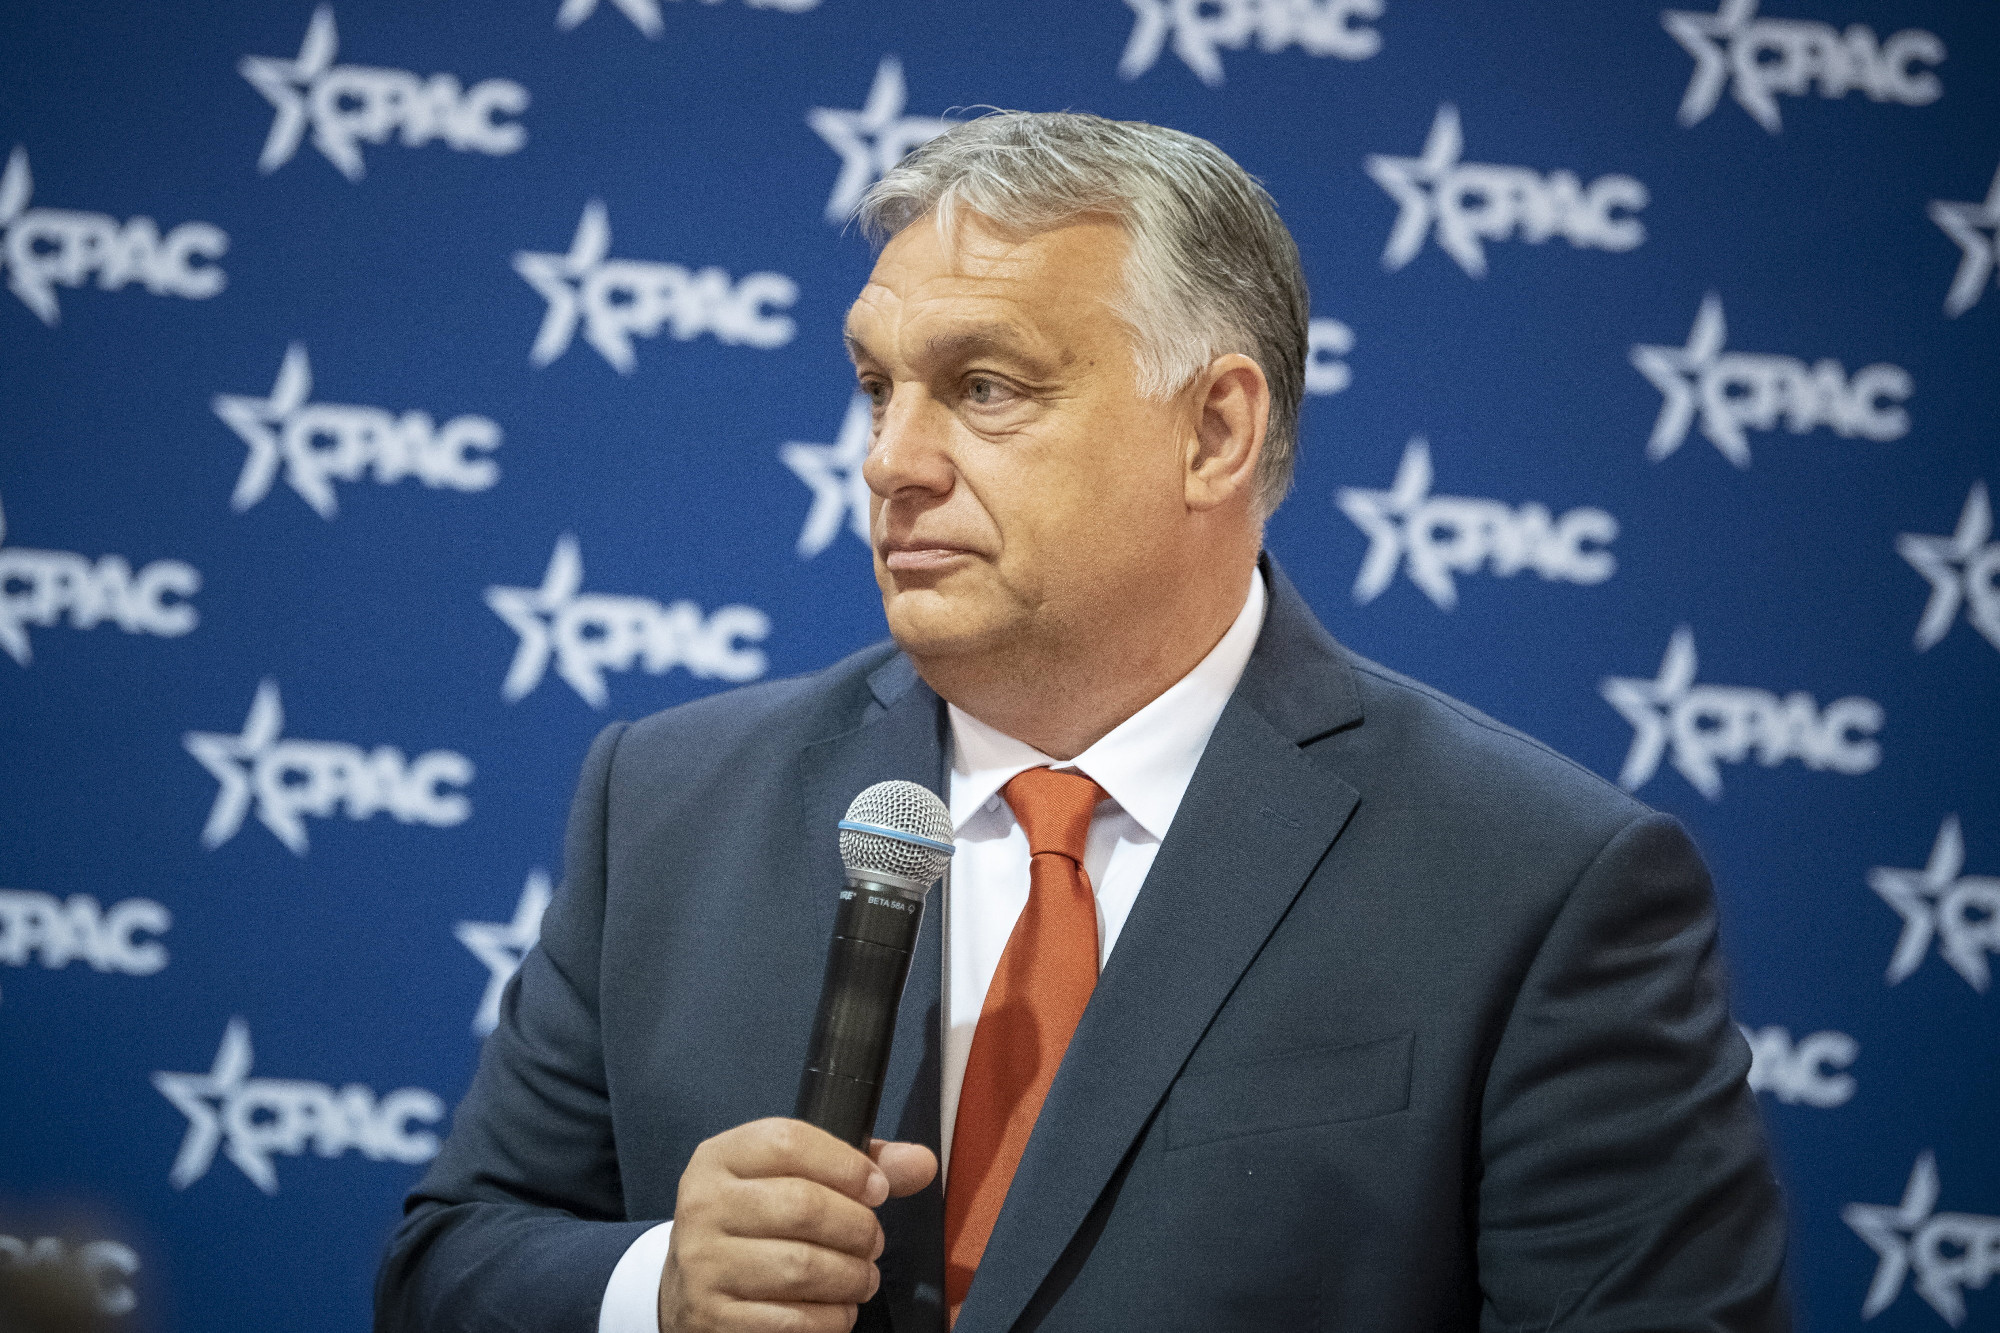 Havasi Bertalan arról tájékoztatta az MTI-t, hogy megdicsérték Orbán Viktor beszédét